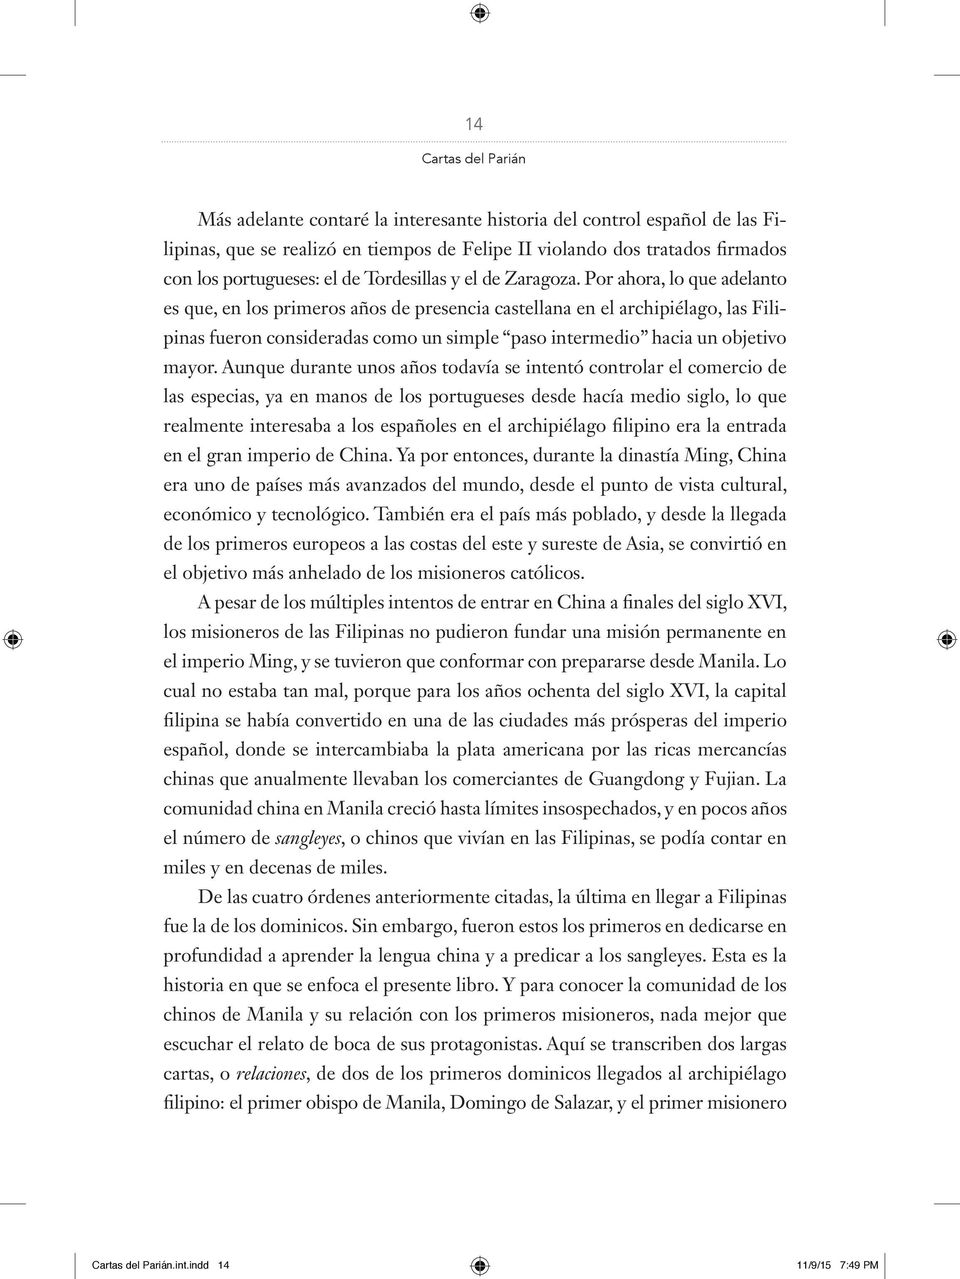 Por ahora, lo que adelan to es que, en los primeros años de presencia castellana en el archipiélago, las Filipinas fueron consideradas como un simple paso intermedio hacia un objetivo mayor.